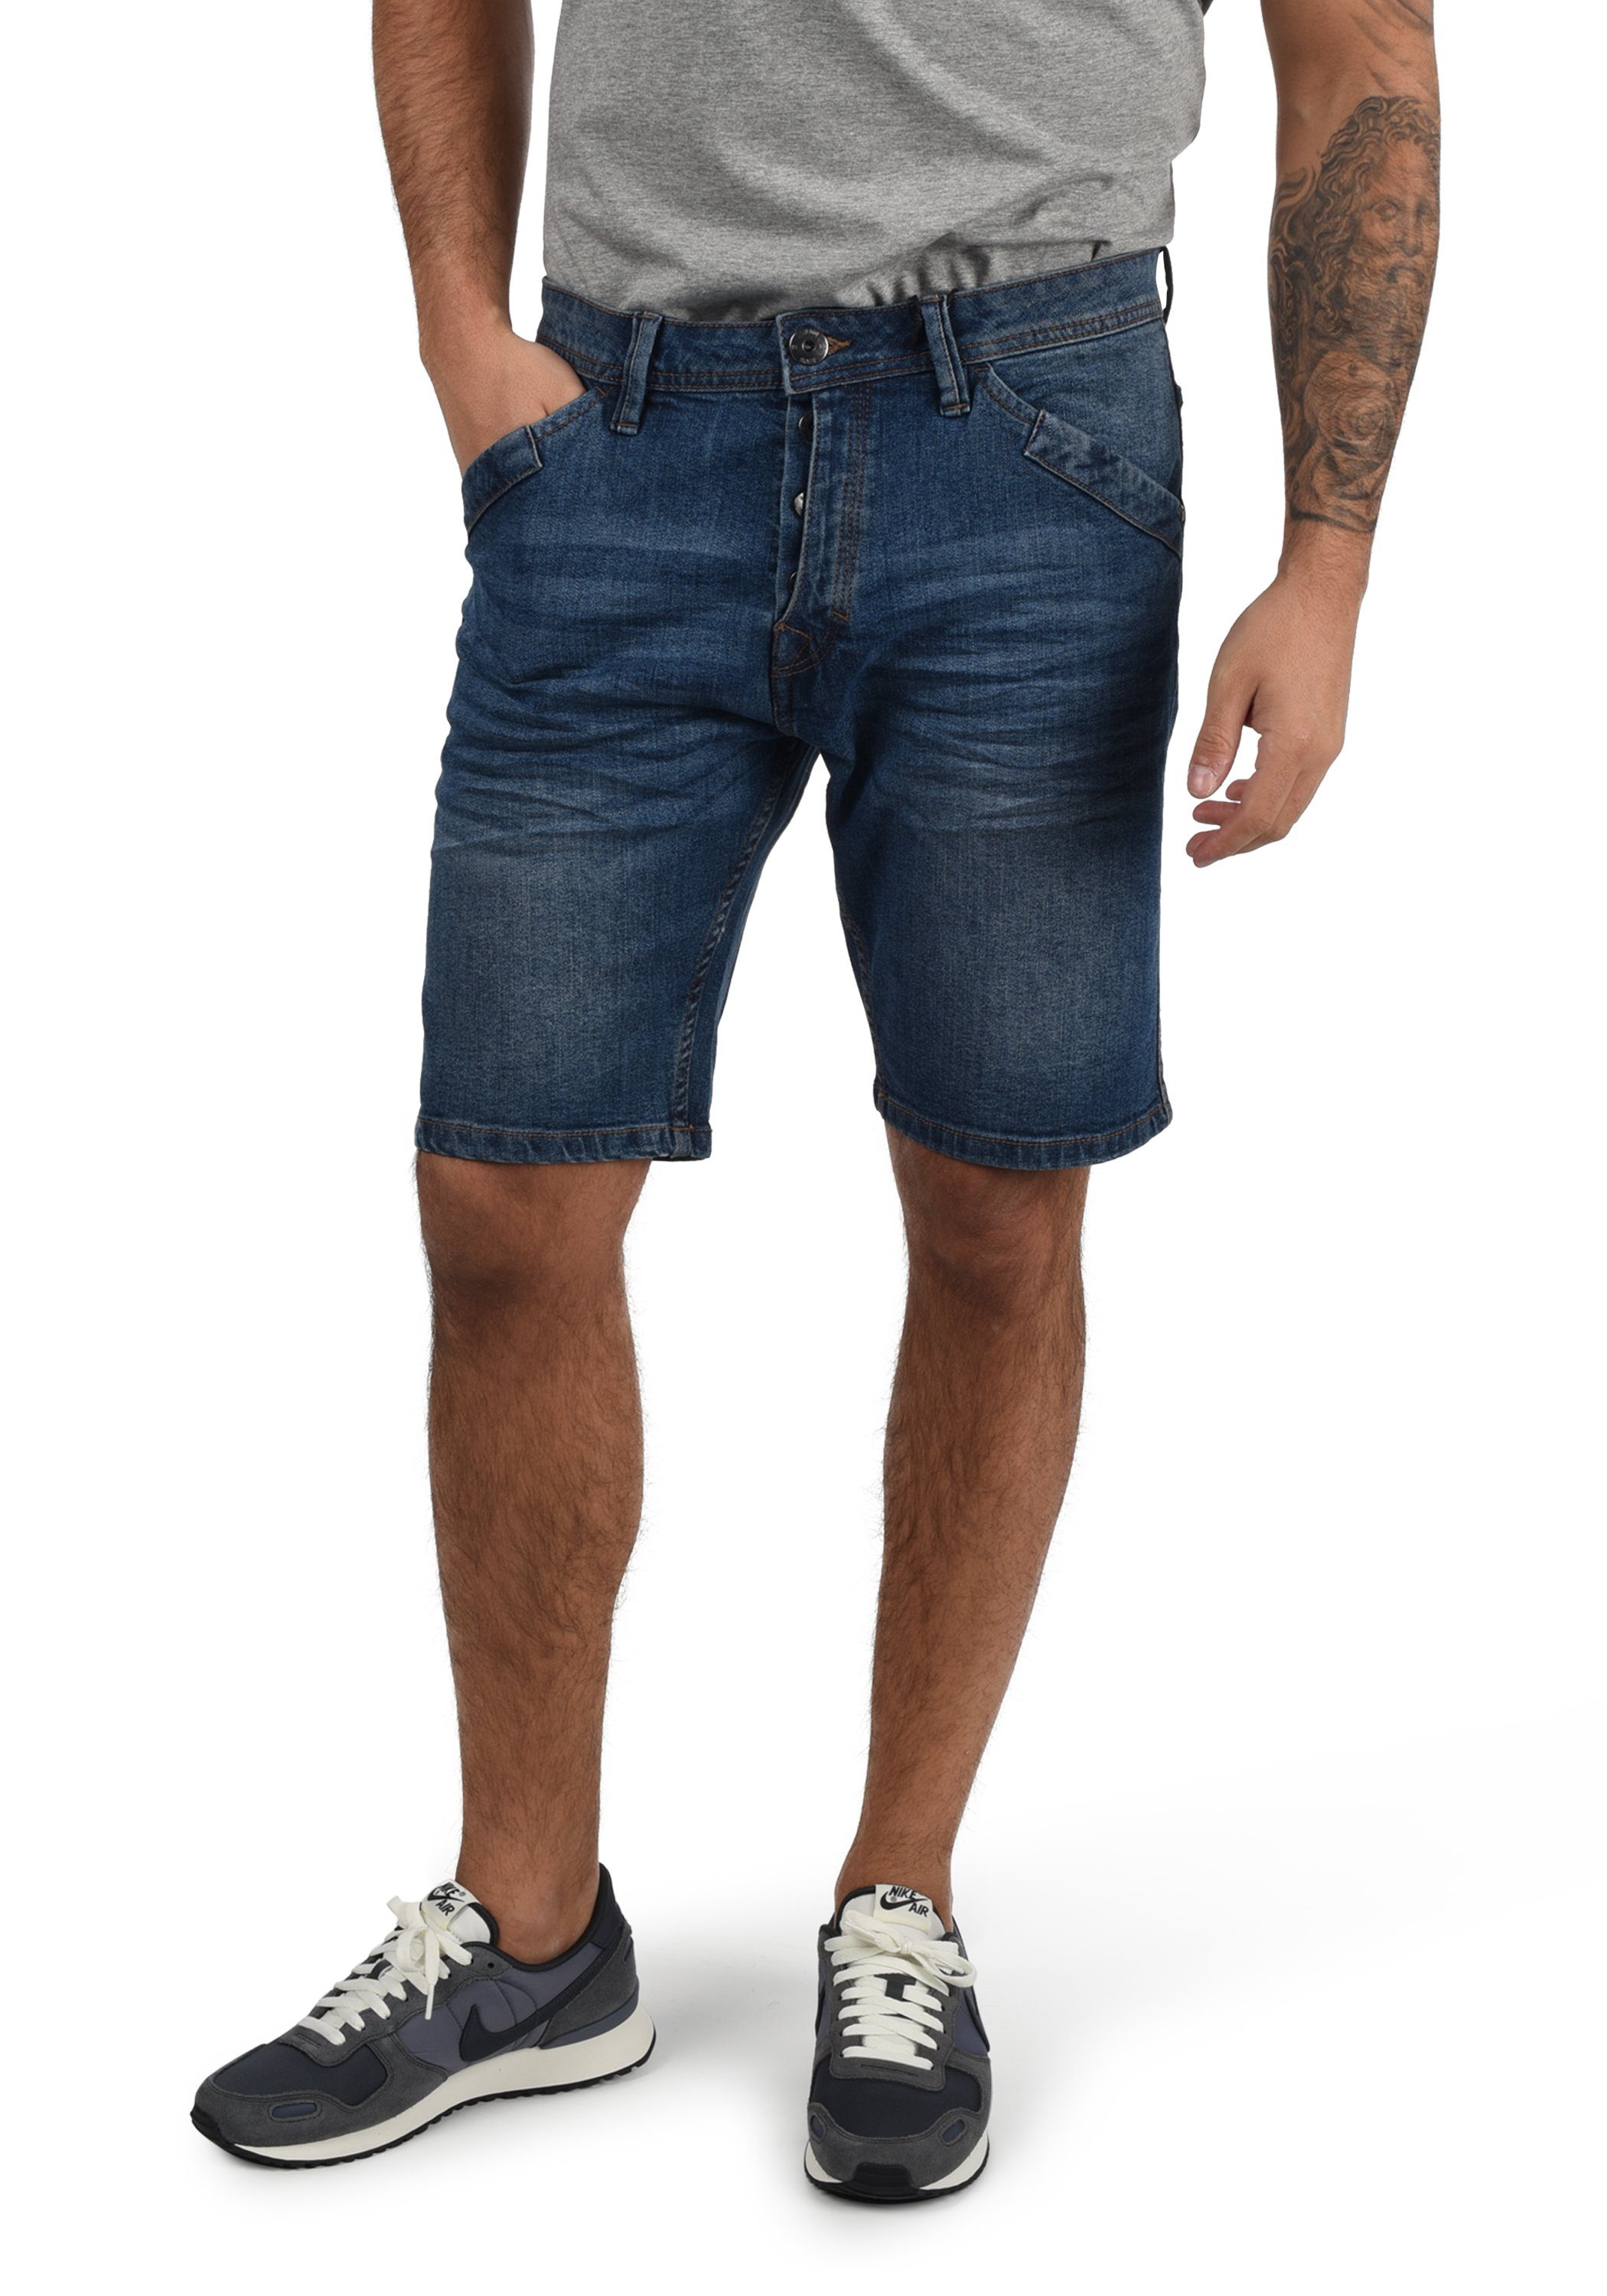 Indicode Jeansshorts IDAlessio - Shorts (869) 70191MM - Medium Indigo